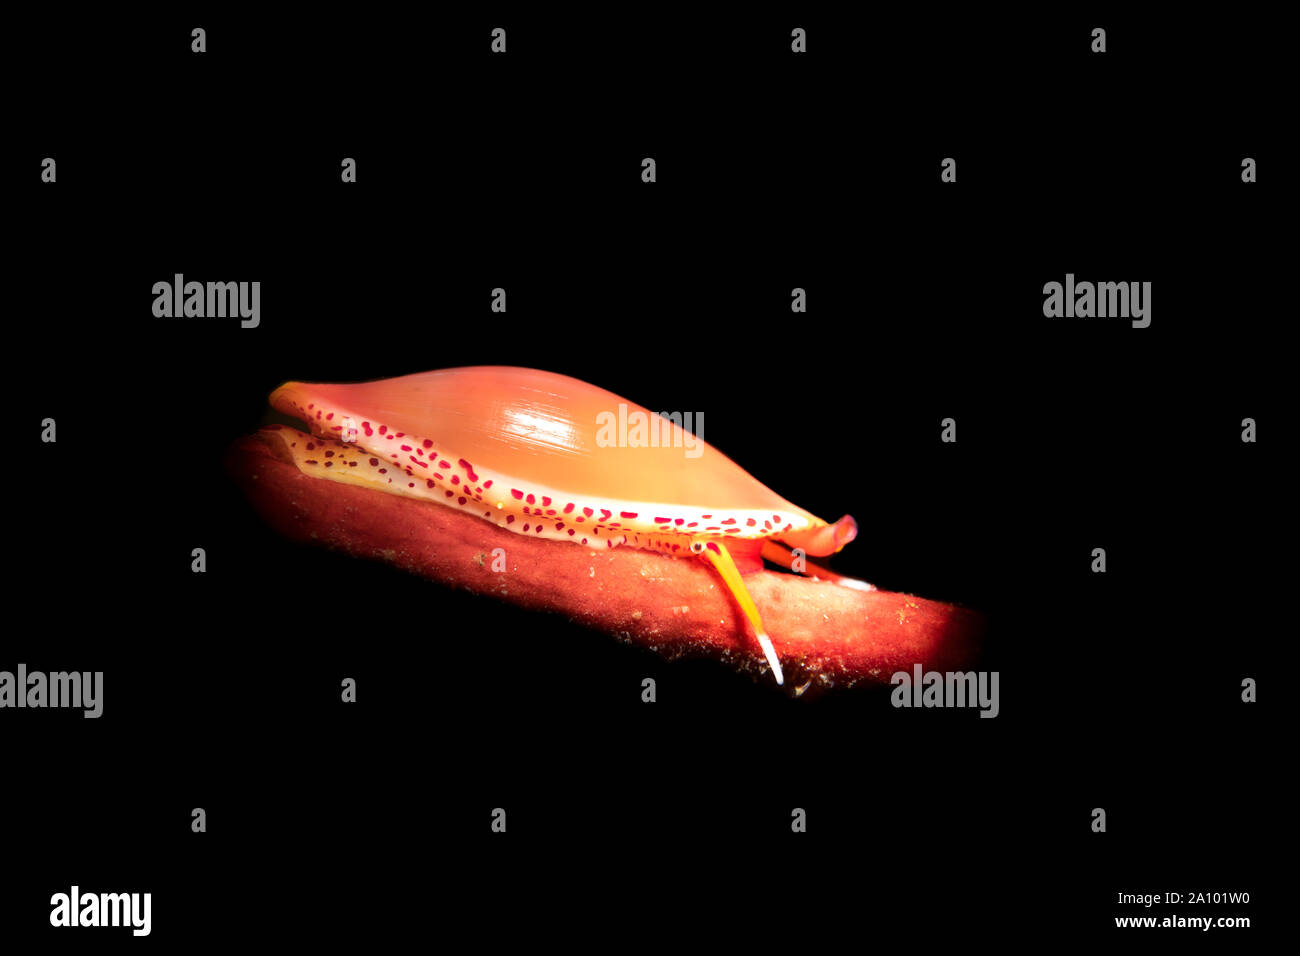 Eine kleine simnia Schnecke kriecht auf dem Host, eine rote Gorgonie Gorgonie, wodurch die Schnecke von Raubtieren zu verstecken. Stockfoto